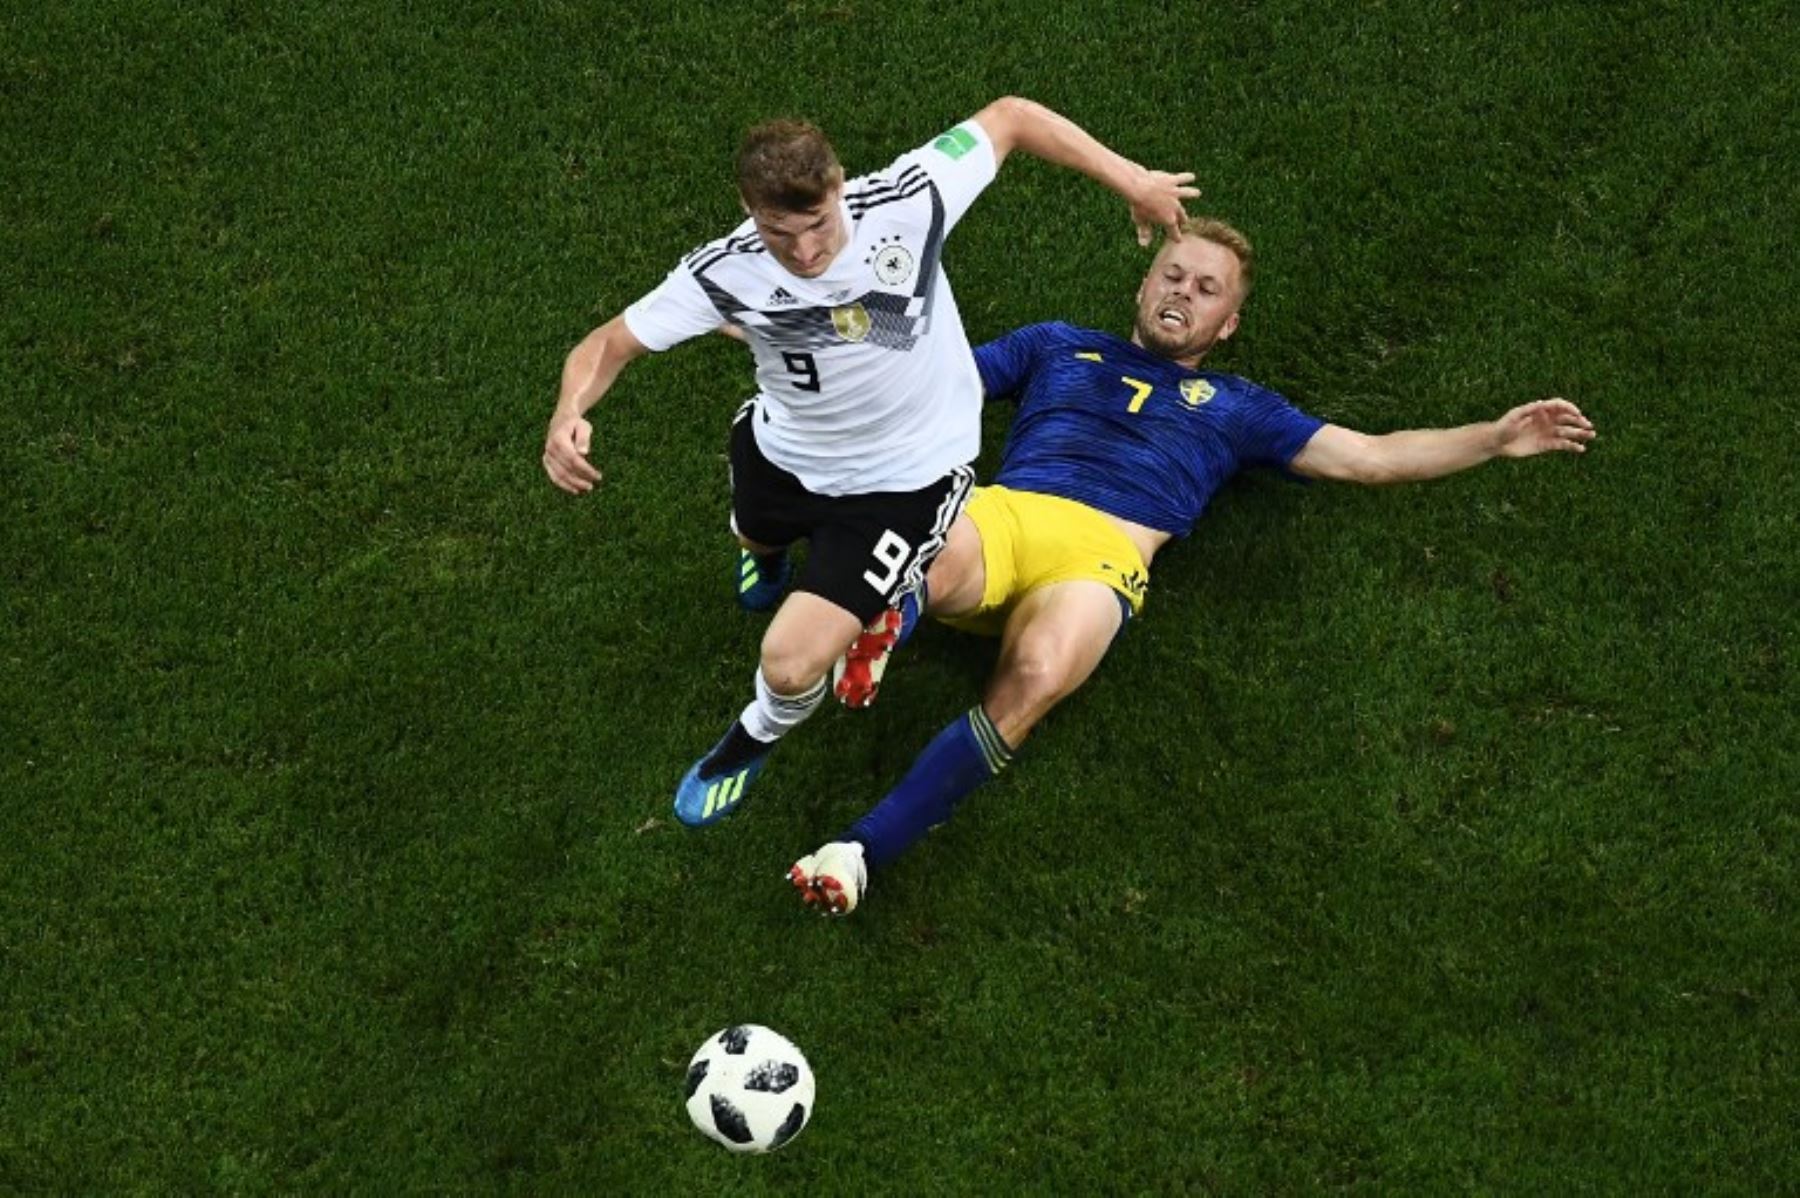 El alero timo Werner de Alemania es abordado por el centrocampista sueco Sebastian Larsson durante el partido de fútbol del Grupo F de la Copa Mundial Rusia 2018 entre Alemania y Suecia.Foto:AFP